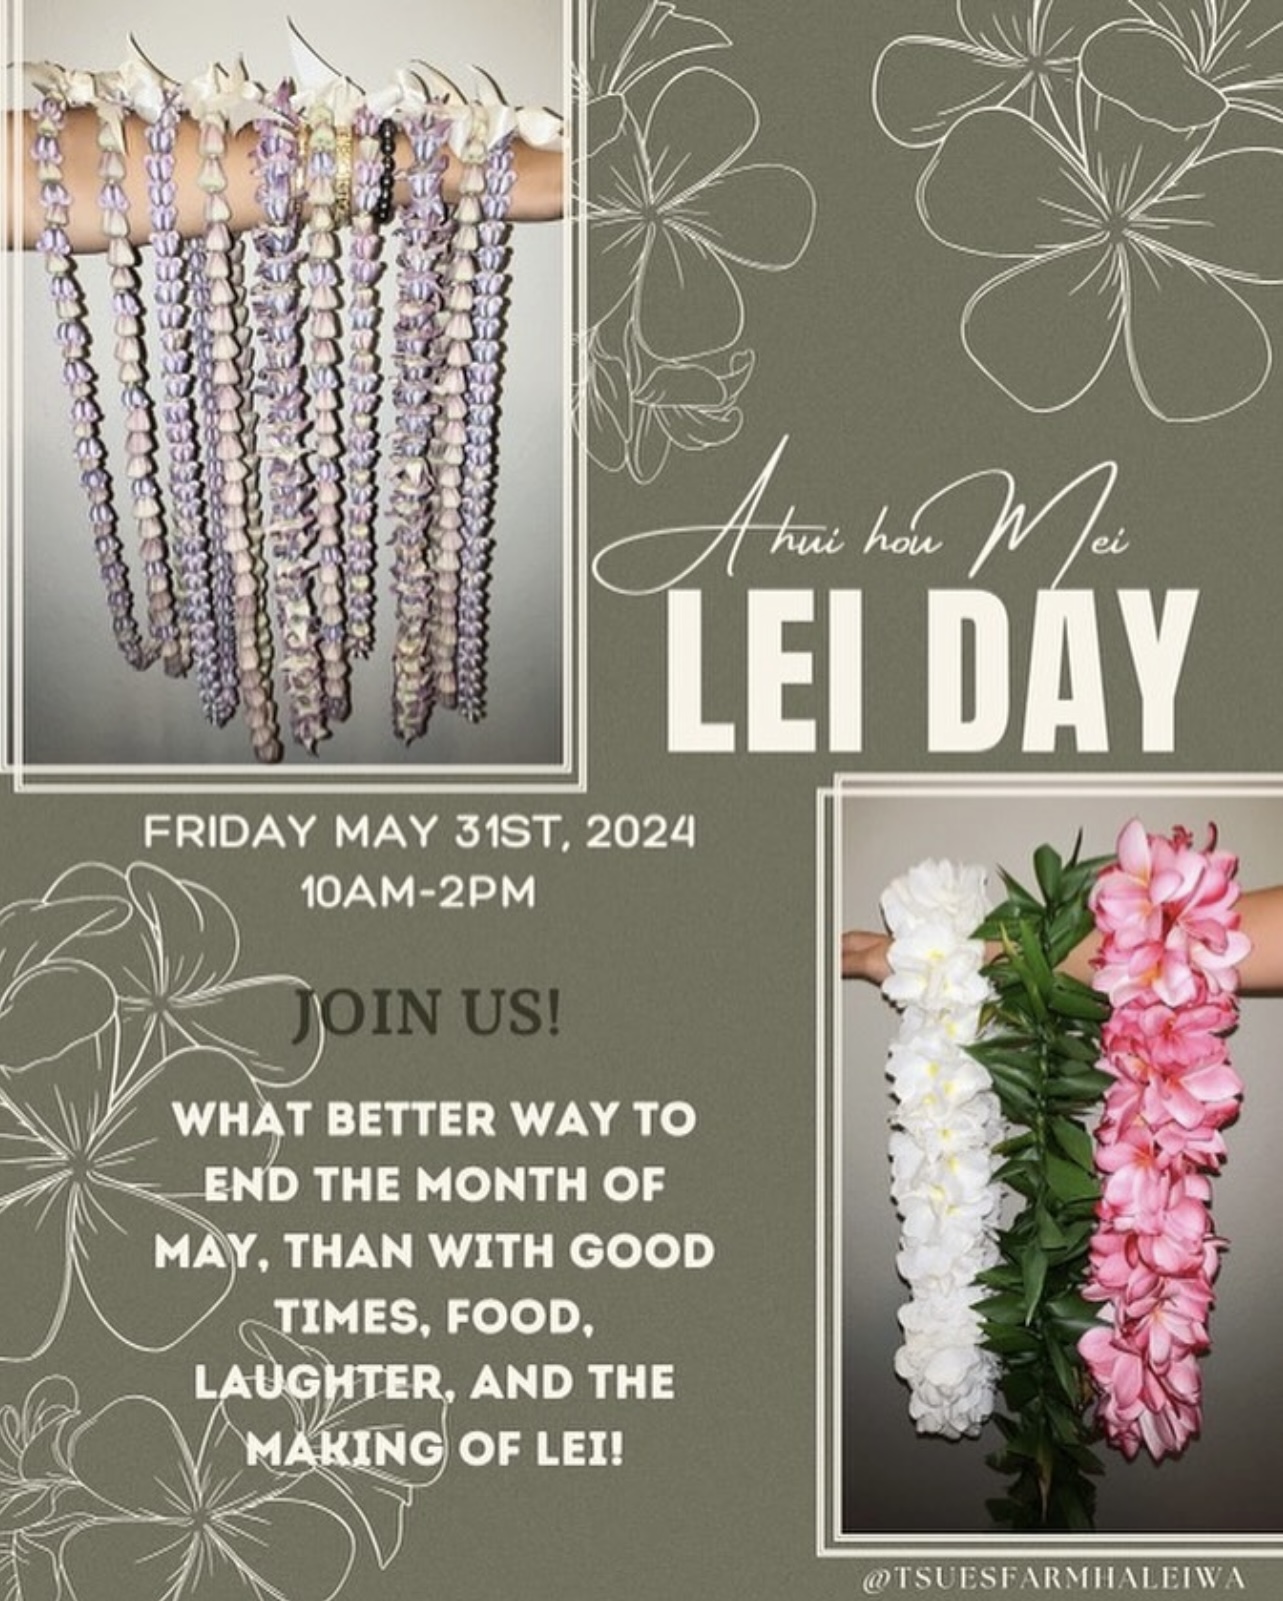 May Day Lei Day at Tsue's Farm - Friday, May 31